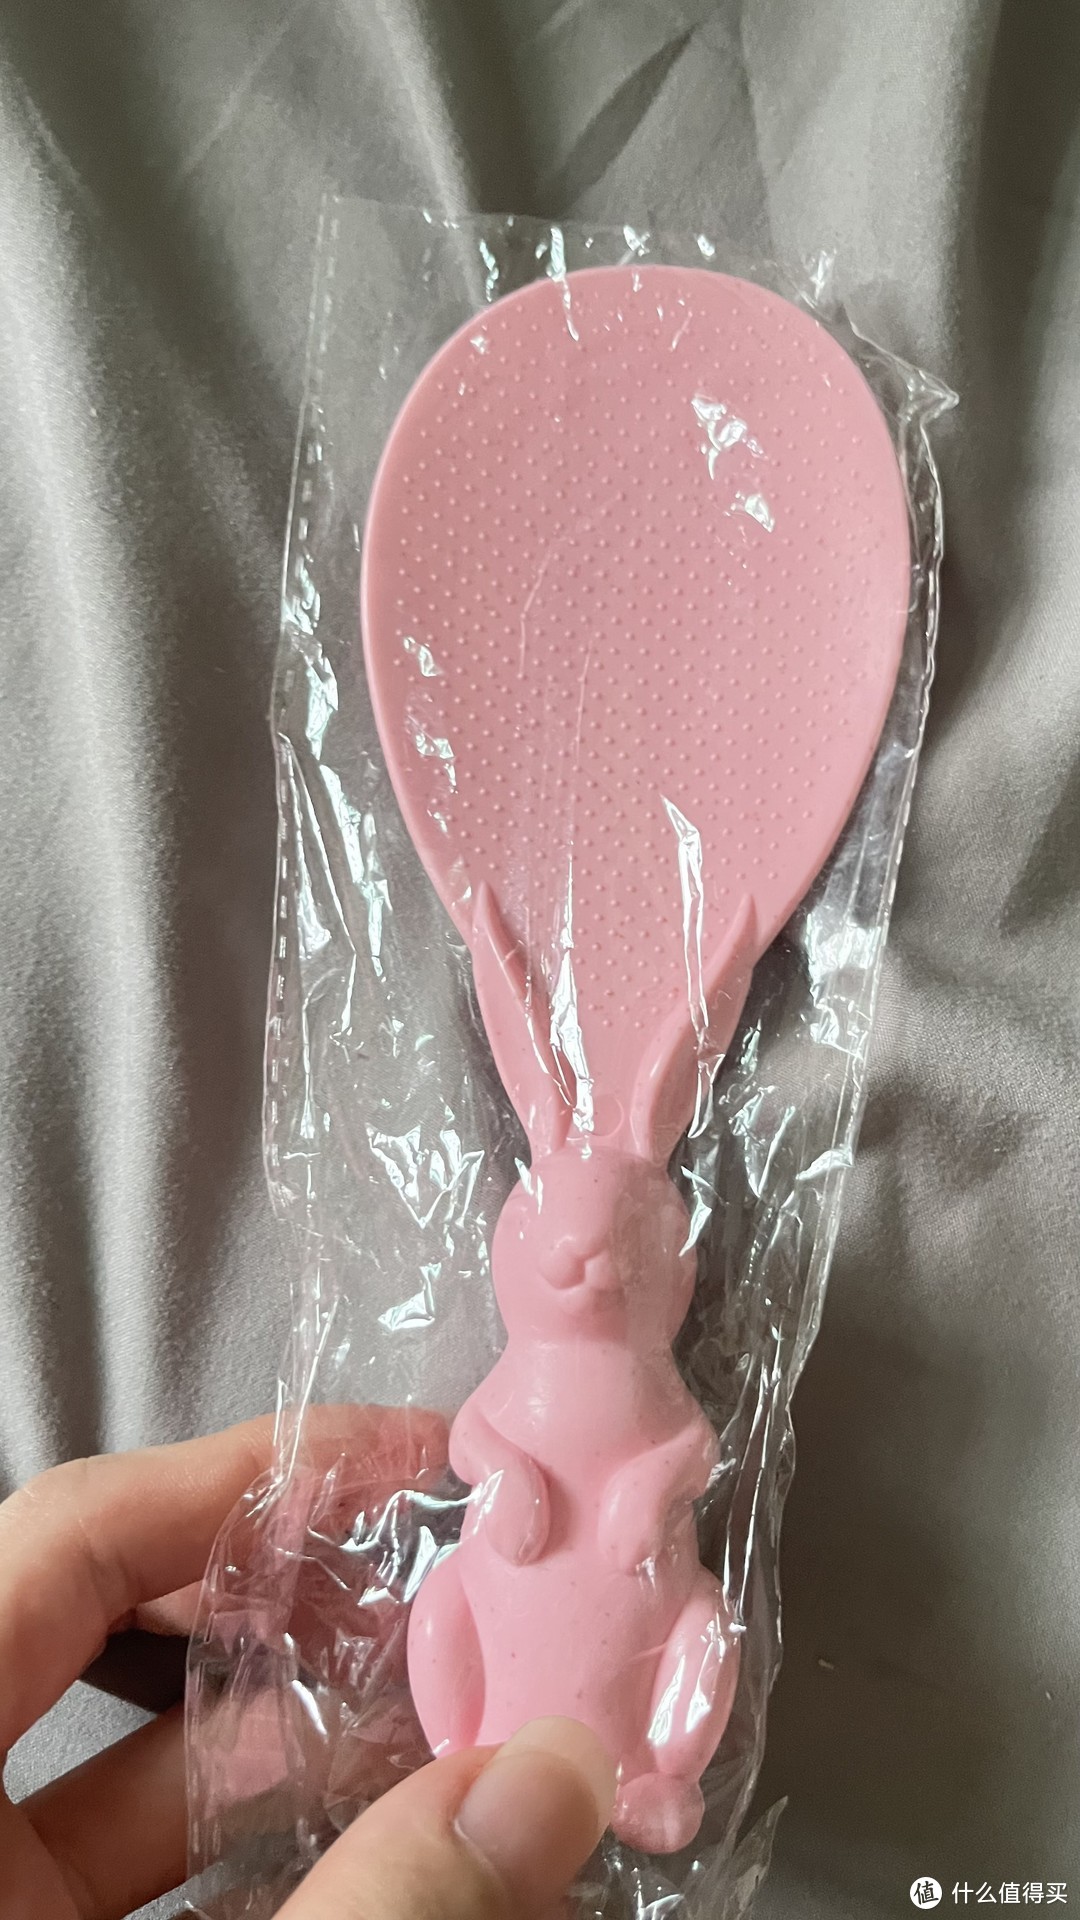 这个饭勺真的是很可爱，粉粉嫩嫩的。